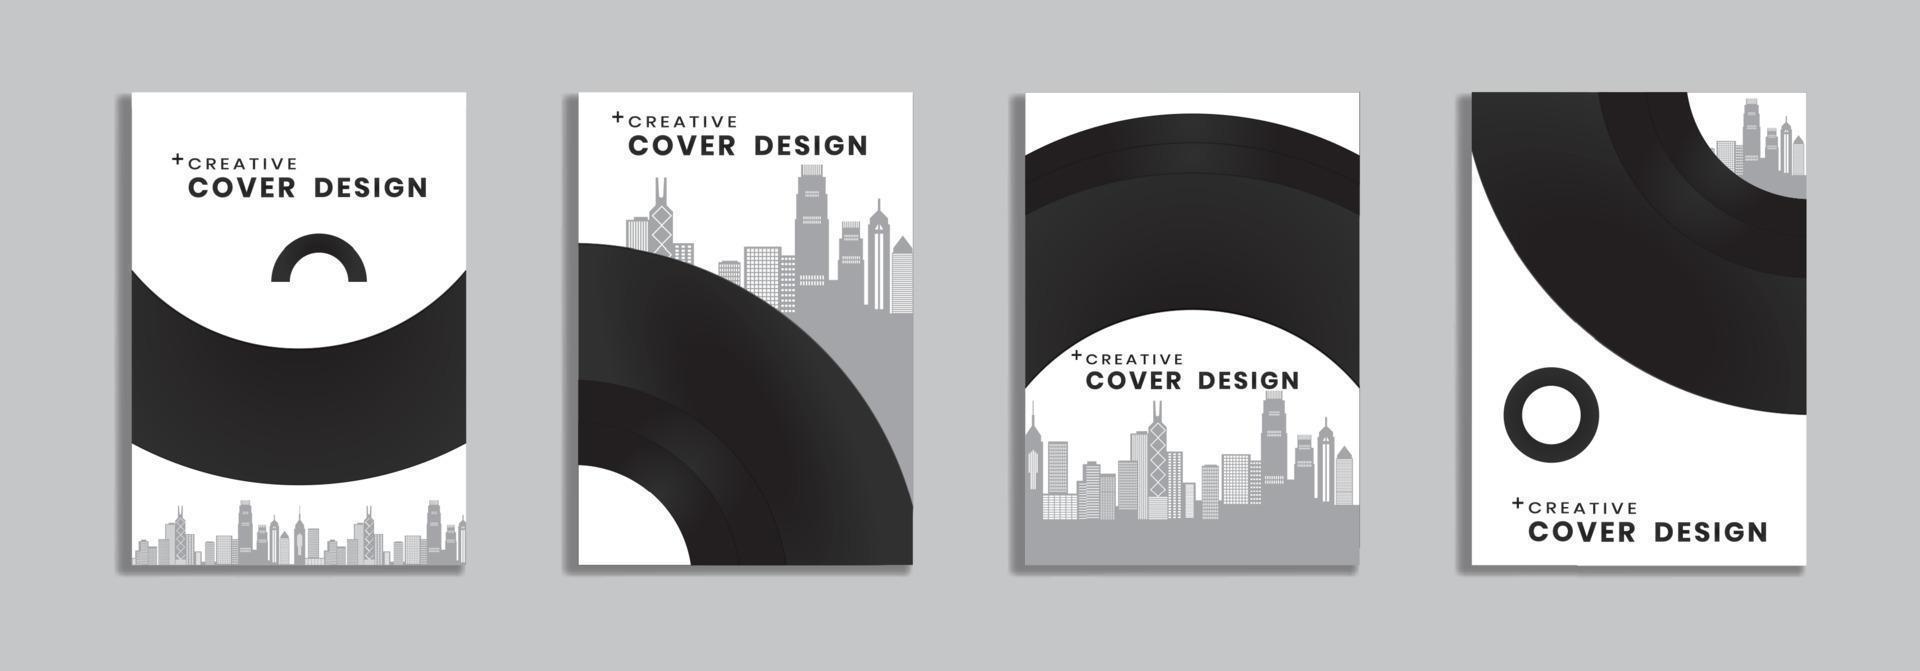 diseño de plantilla de folleto editable, portadas de diseño de informe anual, revistas, estilo minimalista, folletos en tamaño de papel en a4. elemento de ilustración vectorial. vector